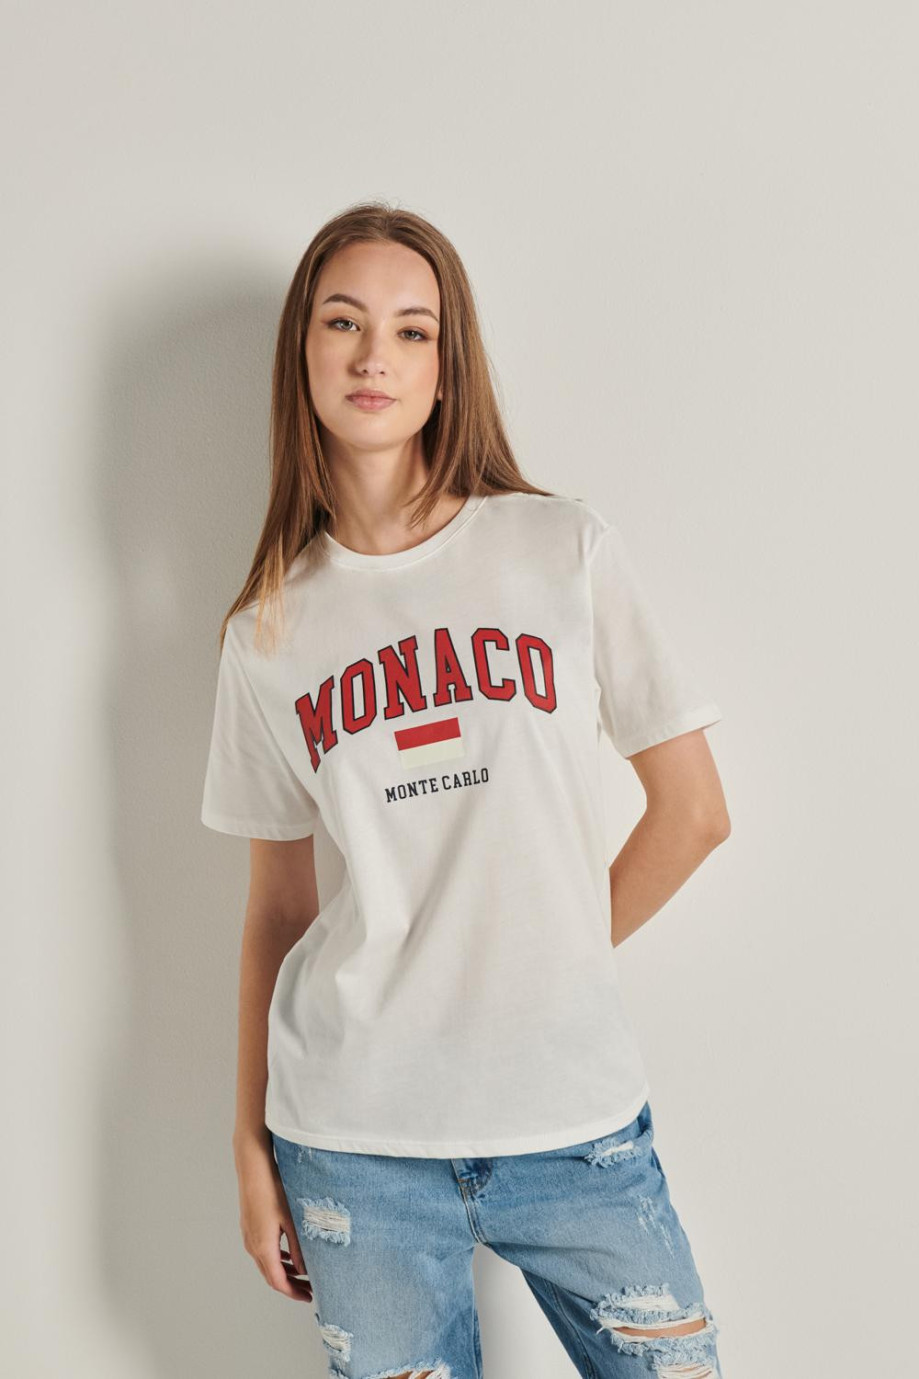 Camiseta unicolor con manga corta y diseño college de Mónaco